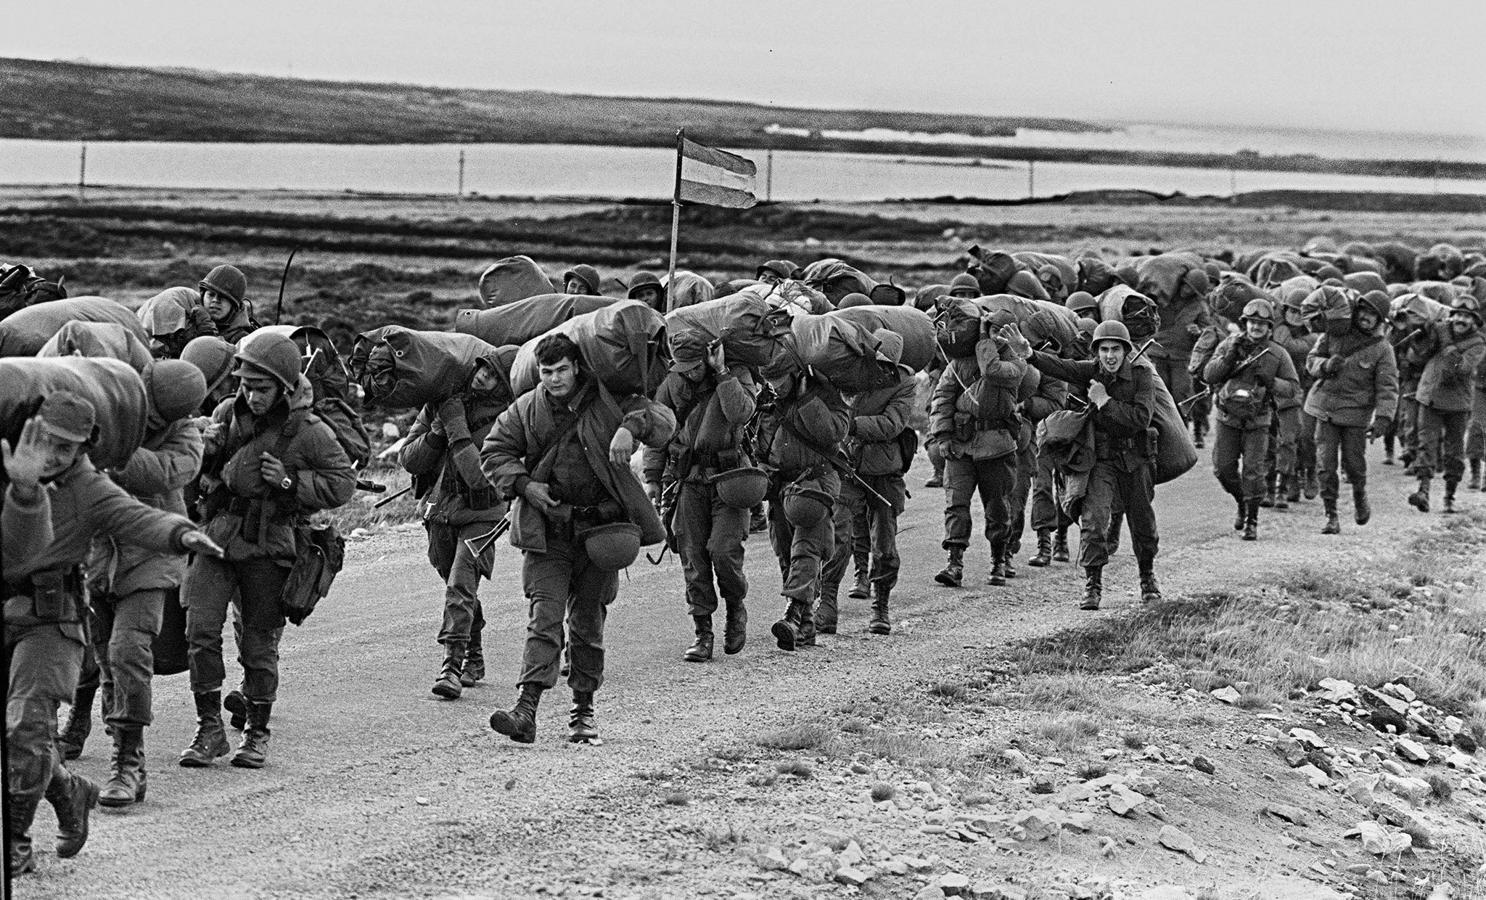 Soldados argentinos caminan el 13 de abril de 1982 para ocupar la base de los Marines Reales capturados en Puerto Argentino/Stanley, unos días después de que la dictadura militar argentina se apoderase de las islas Malvinas, comenzando una guerra entre Argentina y Reino Unido. 